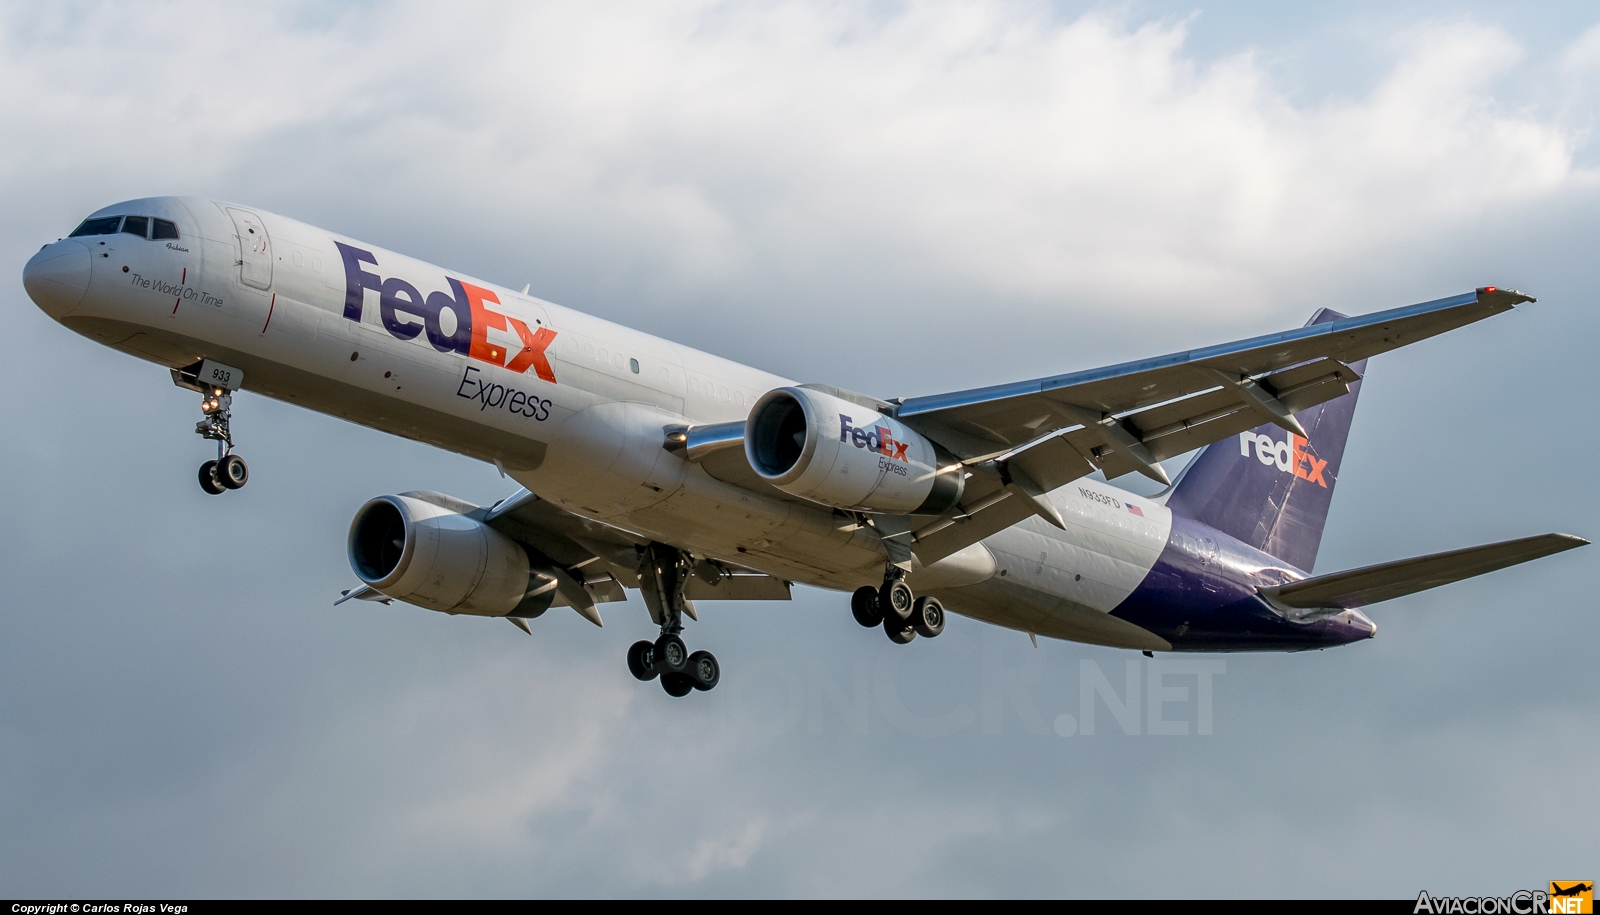 N933FD - Boeing 757-21B - FedEx Express